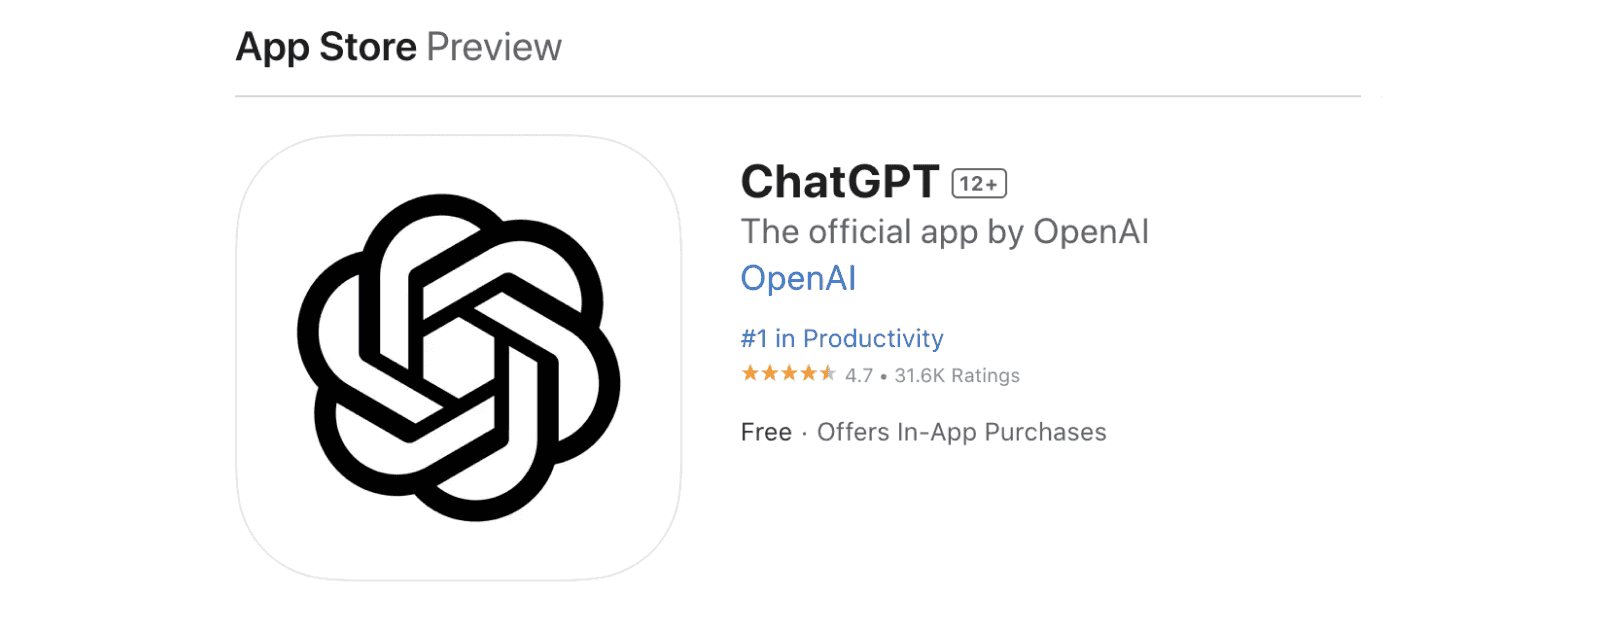 Comment installer ChatGPT sur iPhone ?